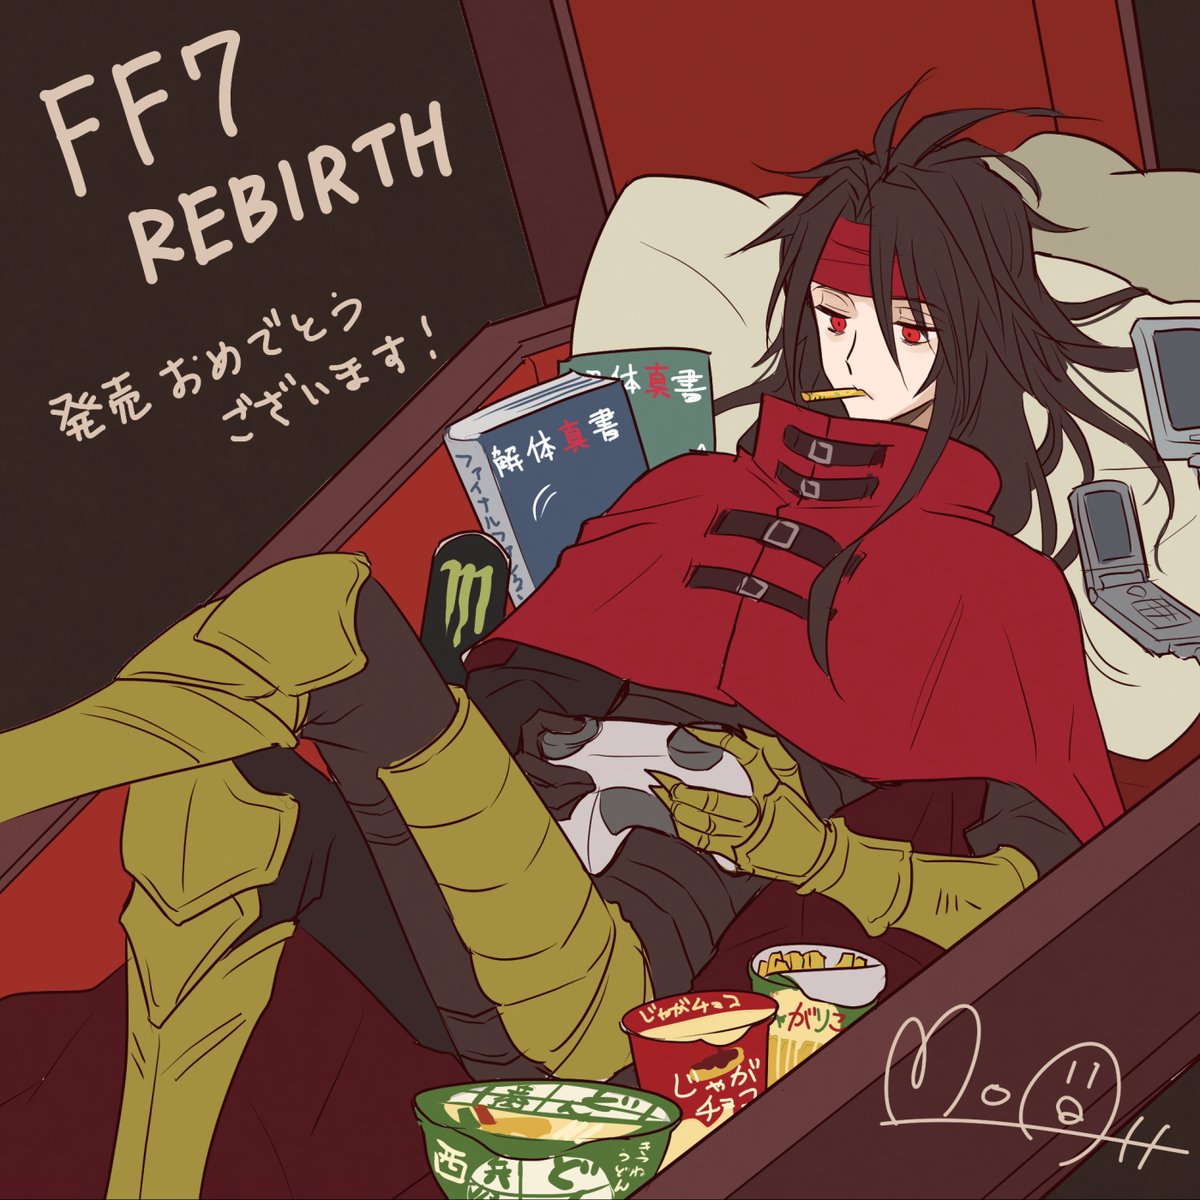 「FF7 REBIRTH発売オメデトウゴザイマス! リメイクによってヴィンセントの」|Moaのイラスト